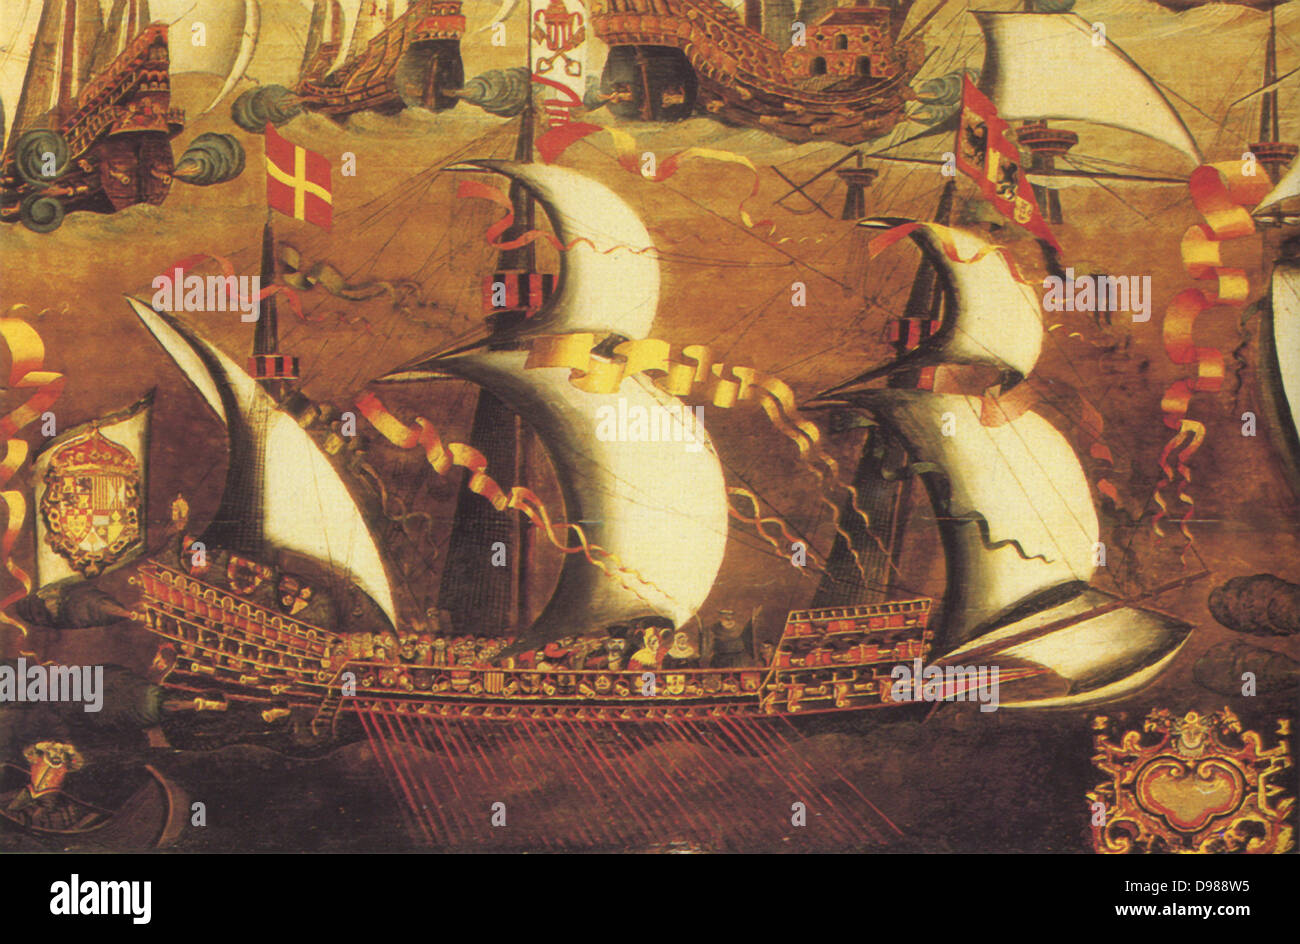 Un galliass ou galleass, partie de l'espagnol Armarda qui ont navigué contre l'Angleterre durant la guerre anglo-espagnole de 1585-1604. Un bateau plus grand et plus lourd qu'une cuisine intégrée, et propulsé par les deux voiles et avirons. Ils ont transporté 32 avirons, atteint a travaillé jusqu'à cinq hommes. Généralement équipés de trois mâts et un gaillard et aftcastle. Banque D'Images